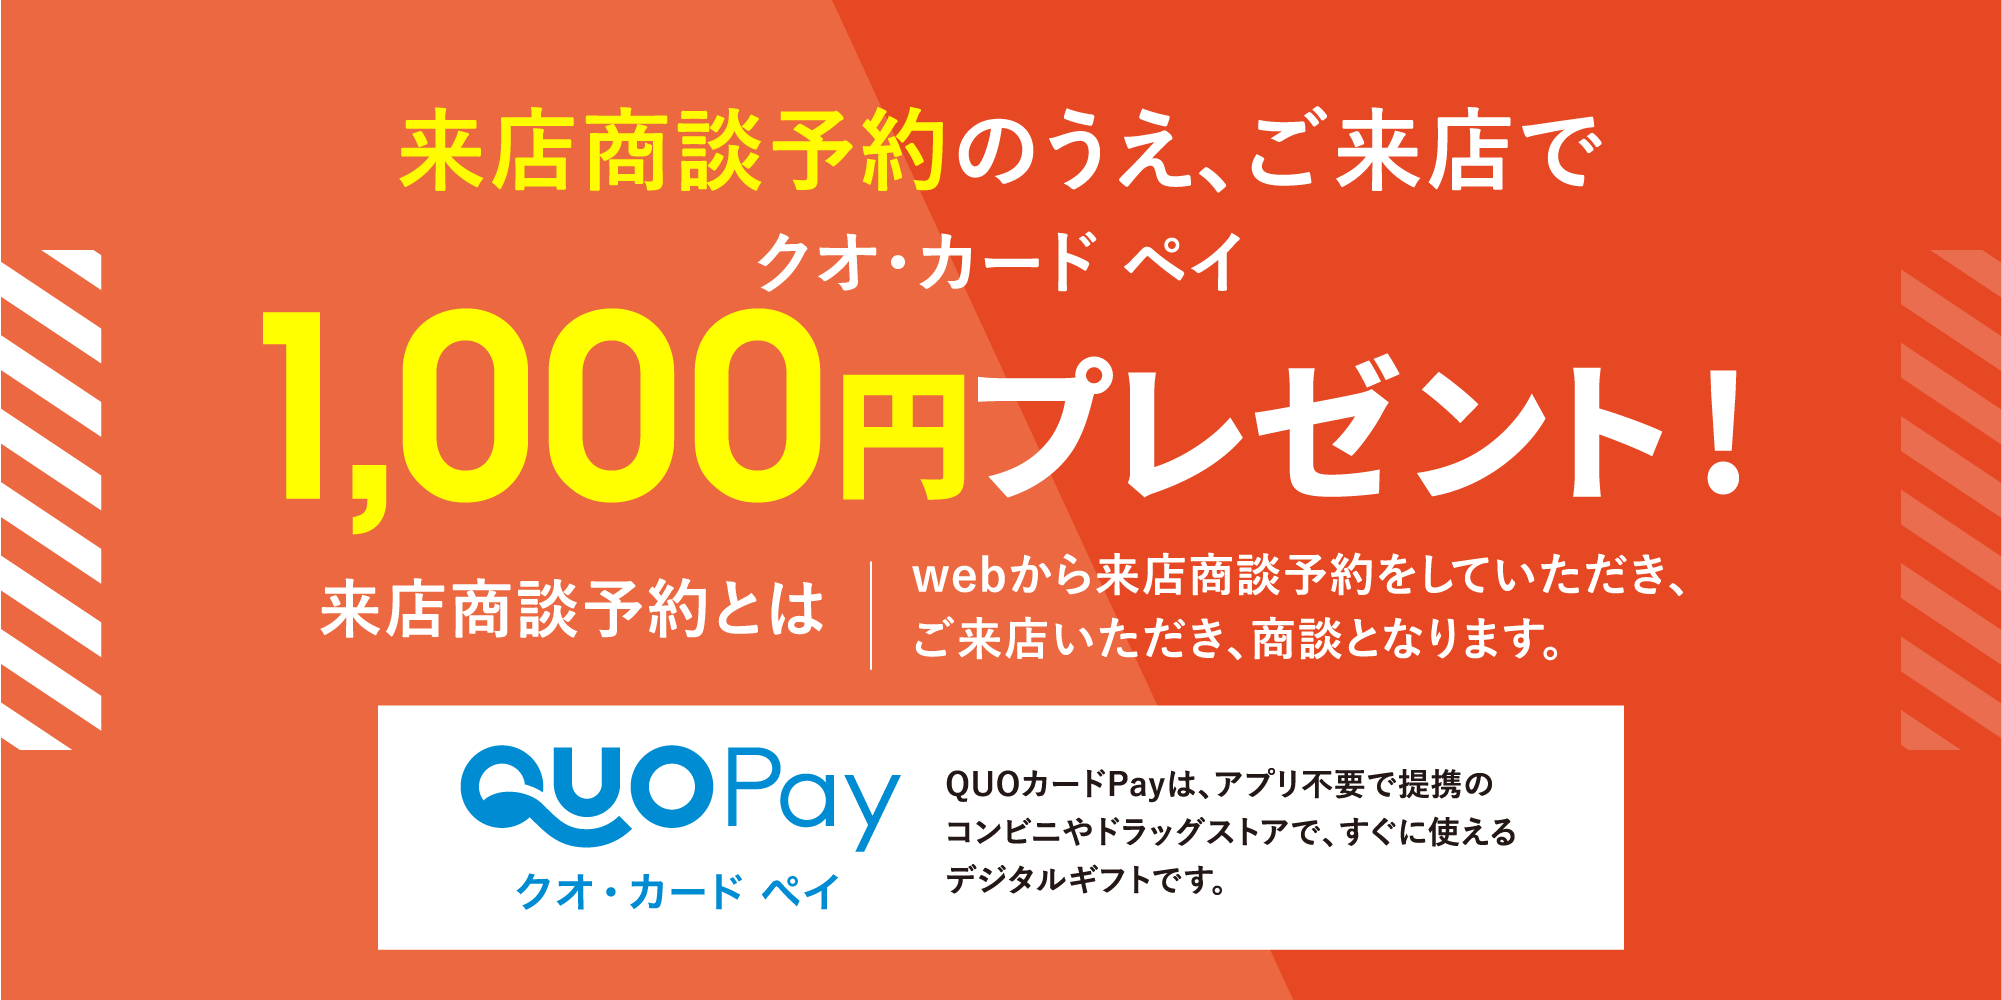 クオカードペイ2000円プレゼント